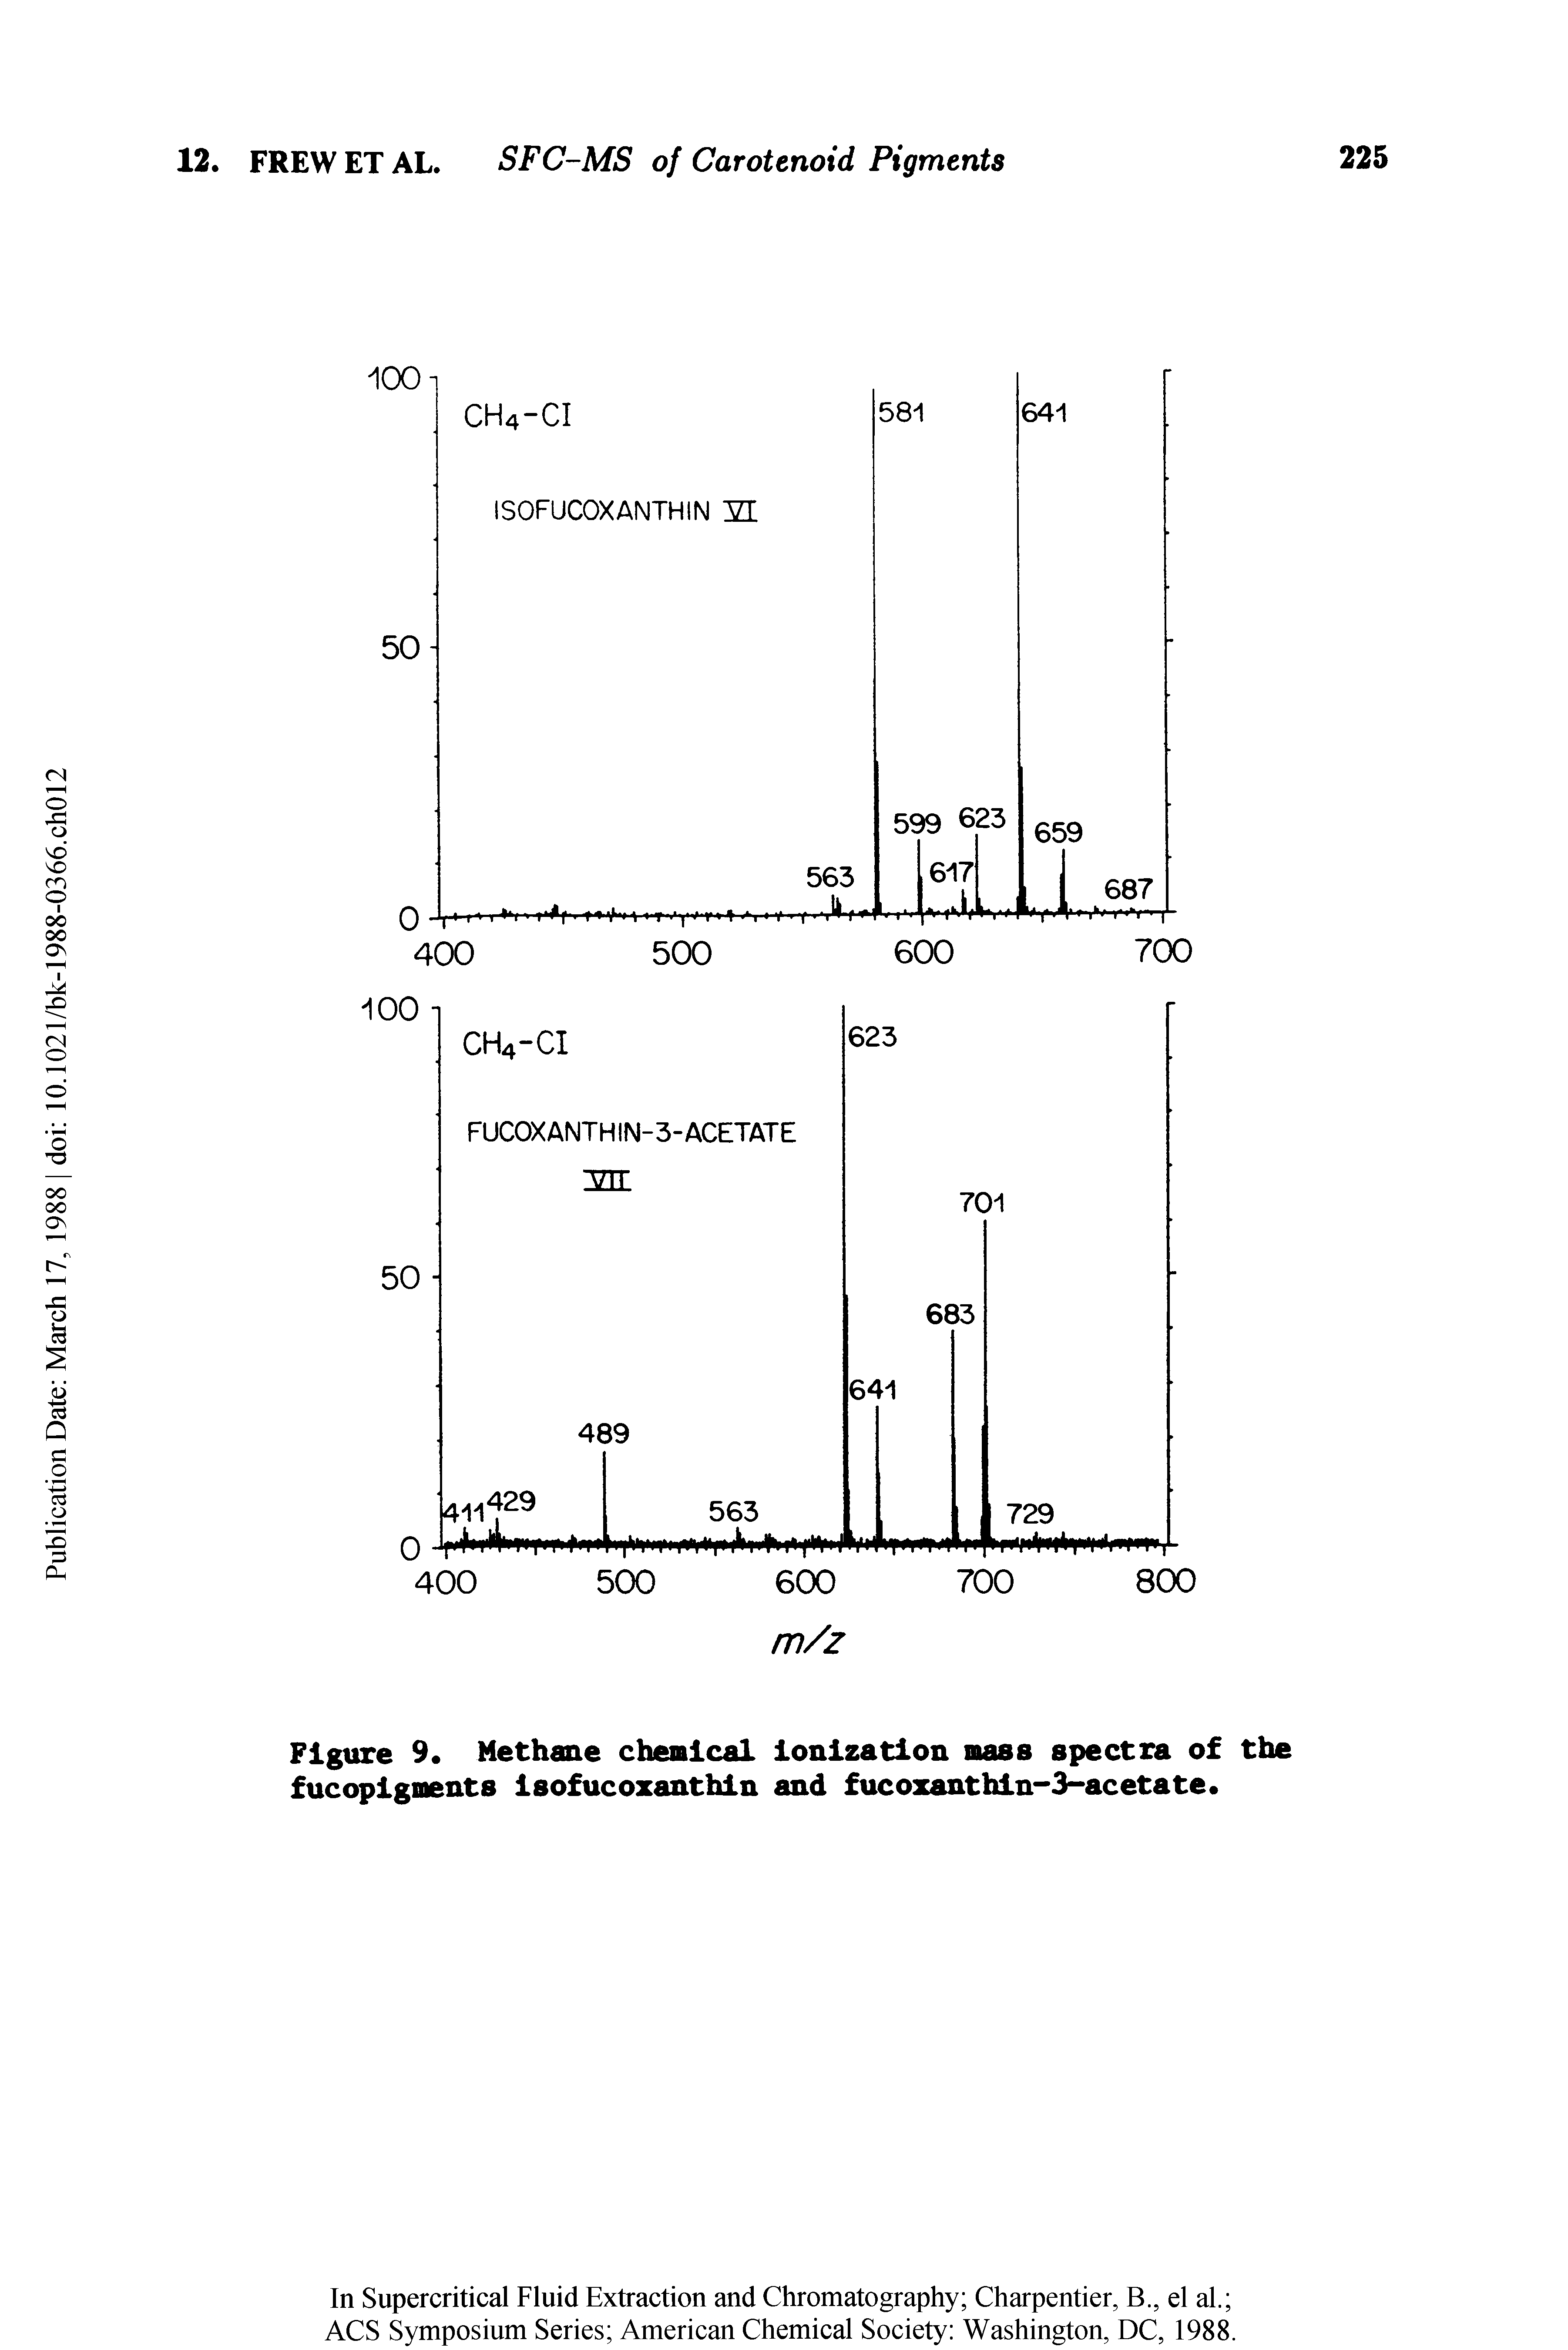 Figure 9 Methane chemical ionization mass spectra of the fucopigments isofucozanthin and fucozanthin-3-acetate ...